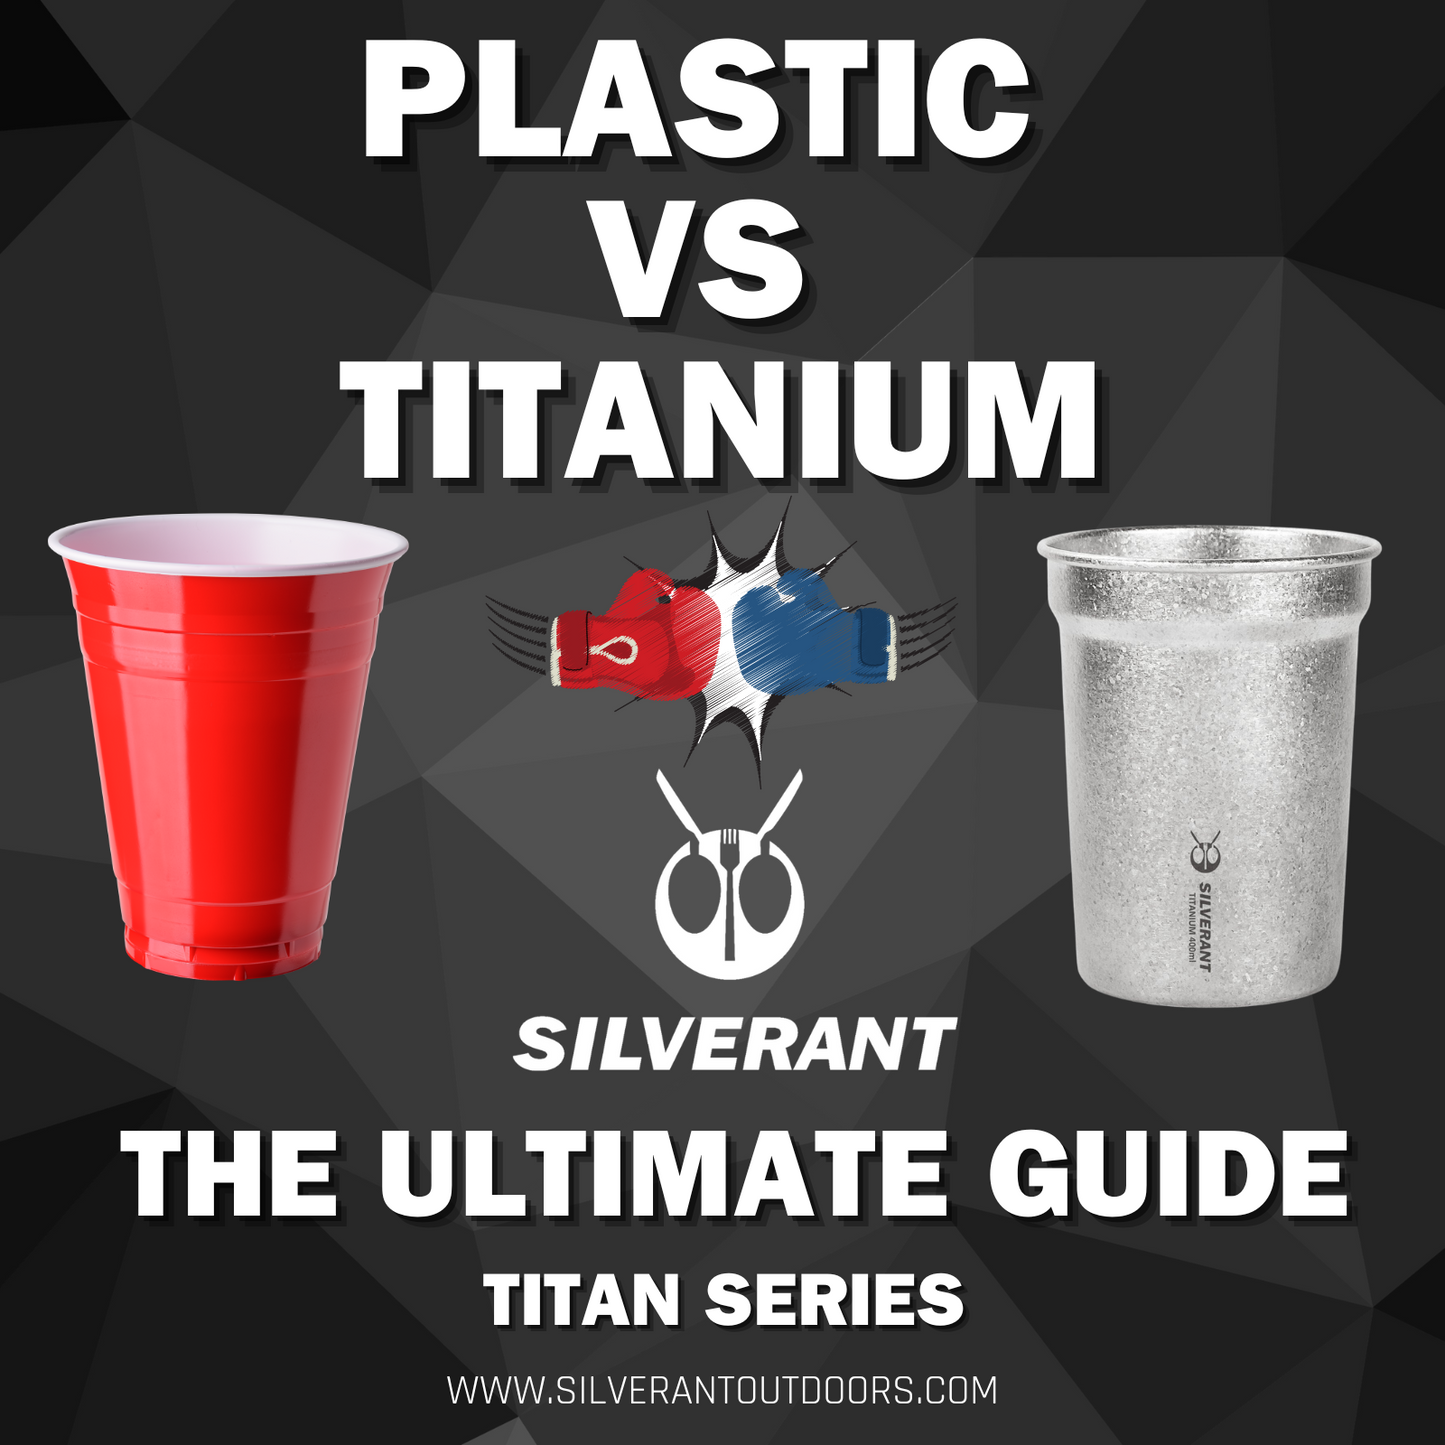 Plastic VS Titanium Article Profile Image Cover